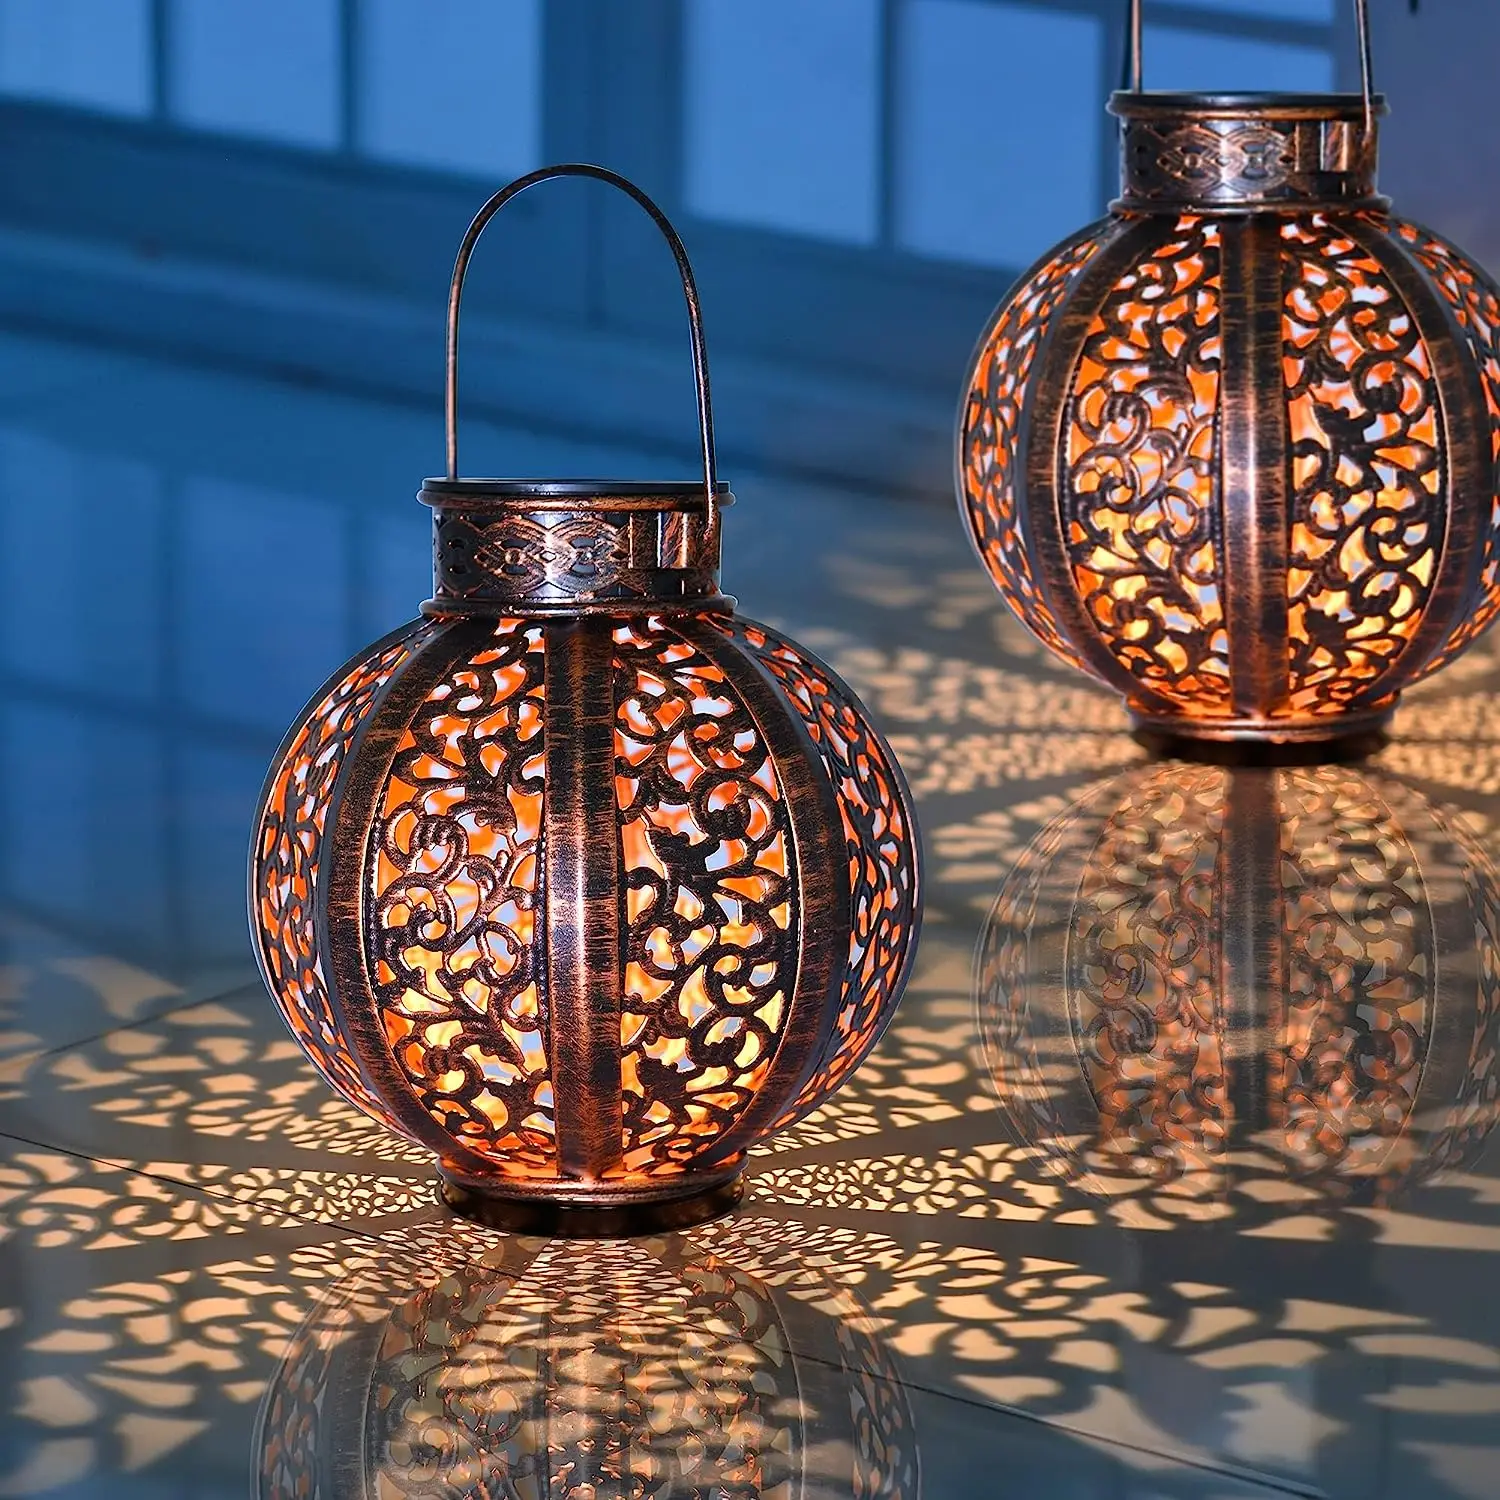 2 комплекта подвесных солнечных фонарей, Уличные украшения в виде фонарей Рамадан, Водонепроницаемый светильник 6 Люмен, коричневый - 0